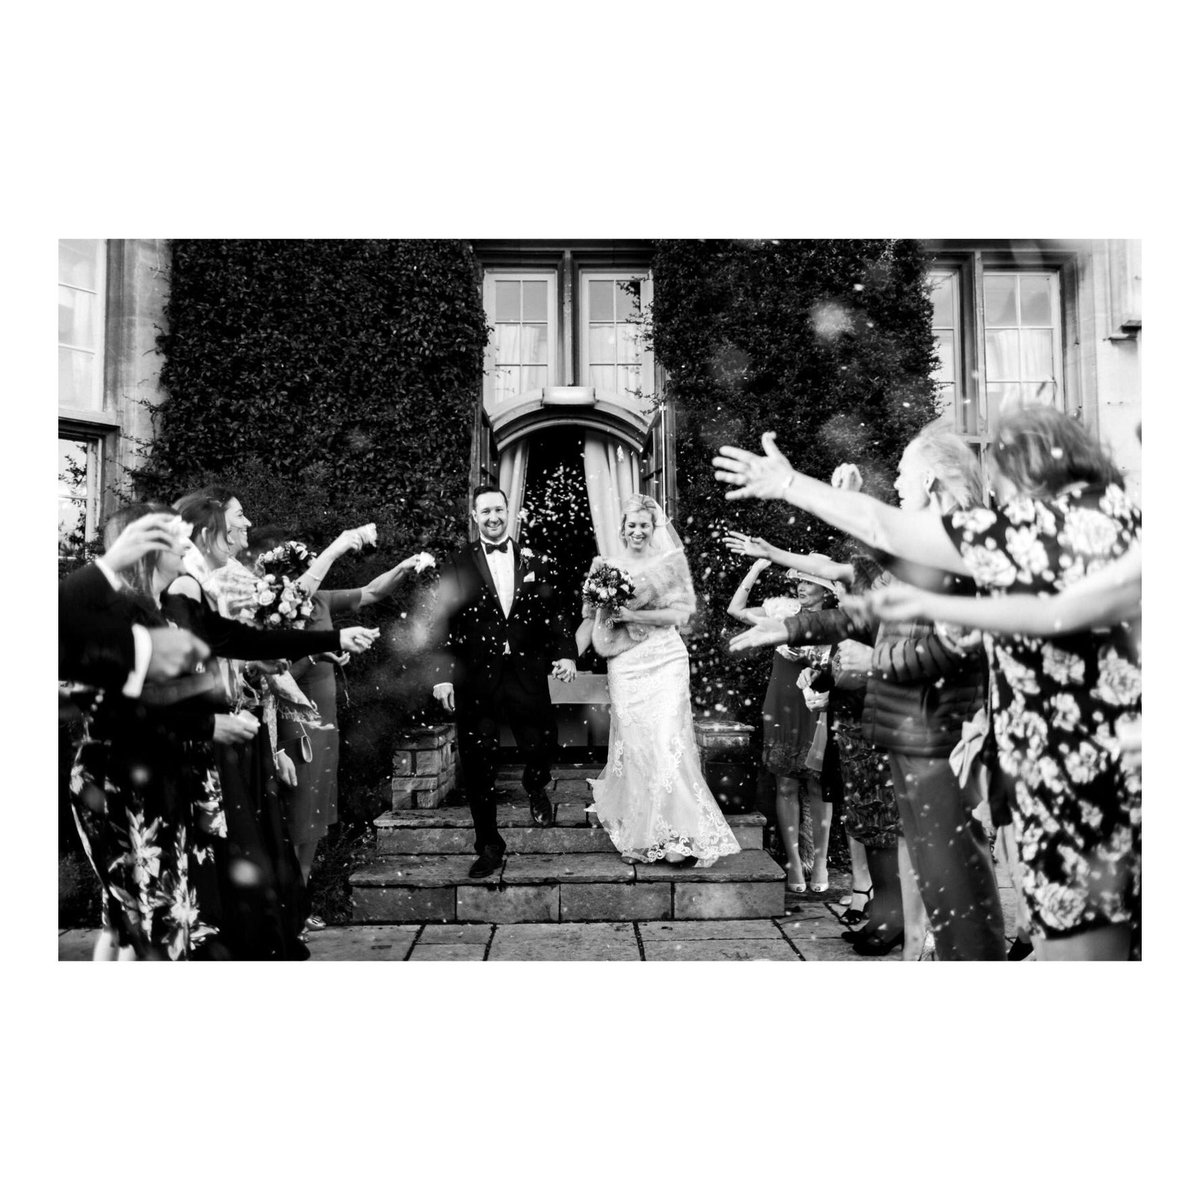 Confetti at the ready! 👌🏻

#mastinlabs #eveshamwedding #worcestershirewedding photographer #wedding